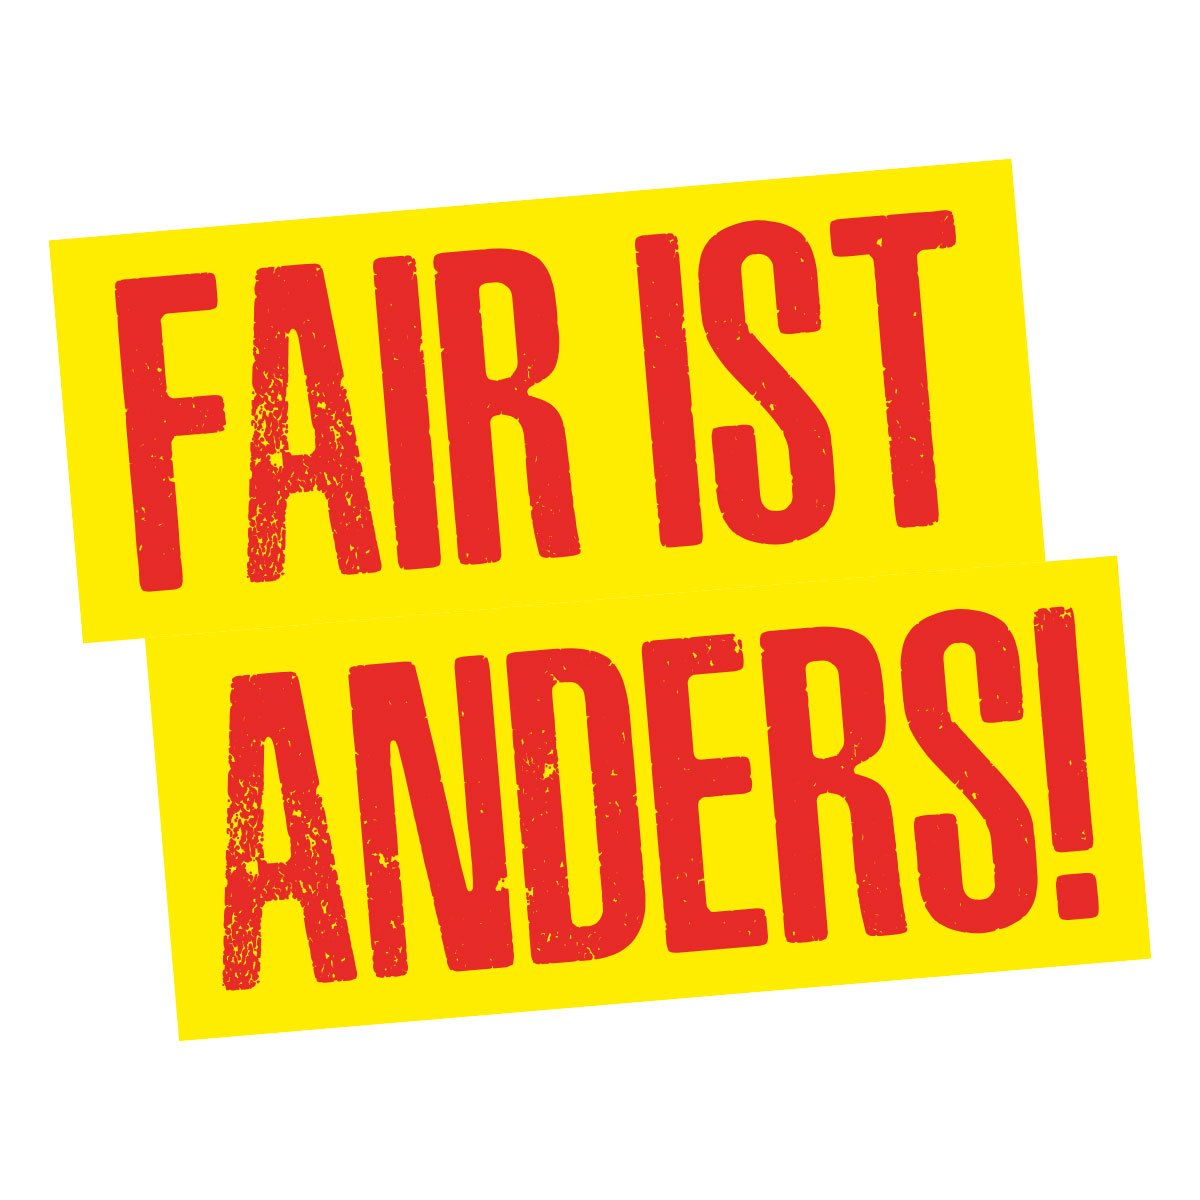 Fair ist anders – der Kanton Bern braucht keine «Staatsbank»!